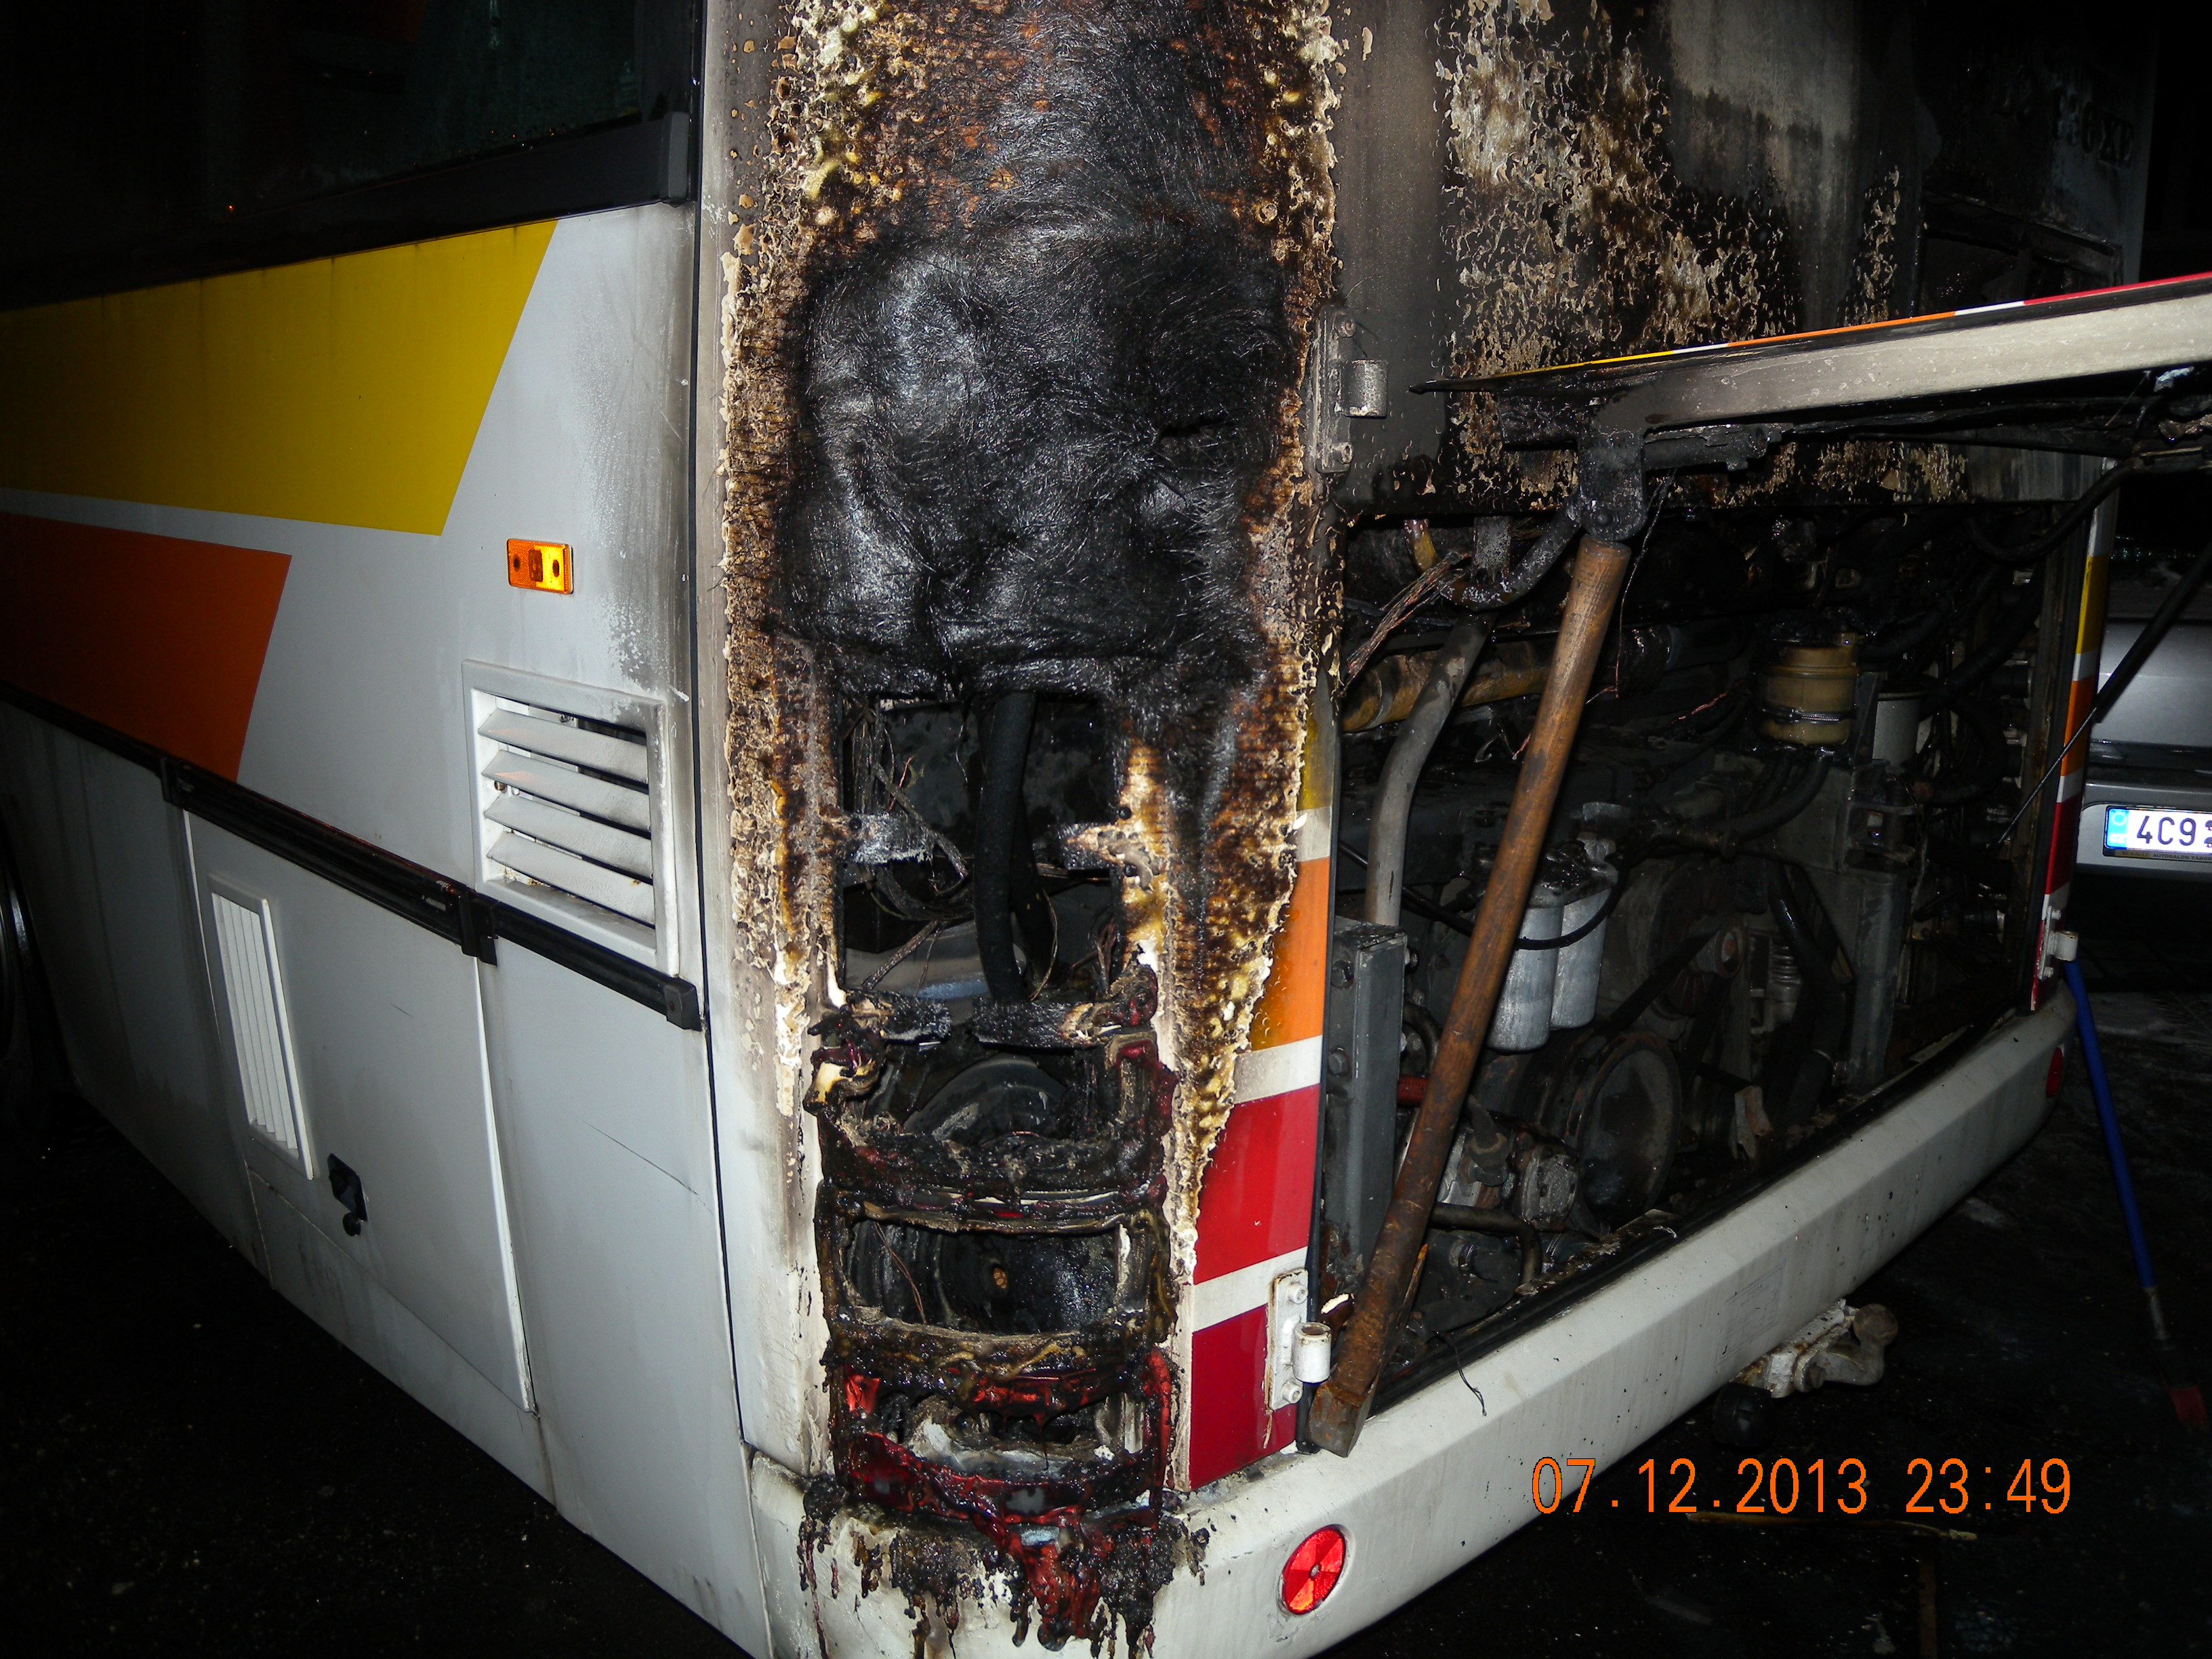 2 Požár autobusu, Sezimovo Ústí - 7. 12. 2013 (1).JPG